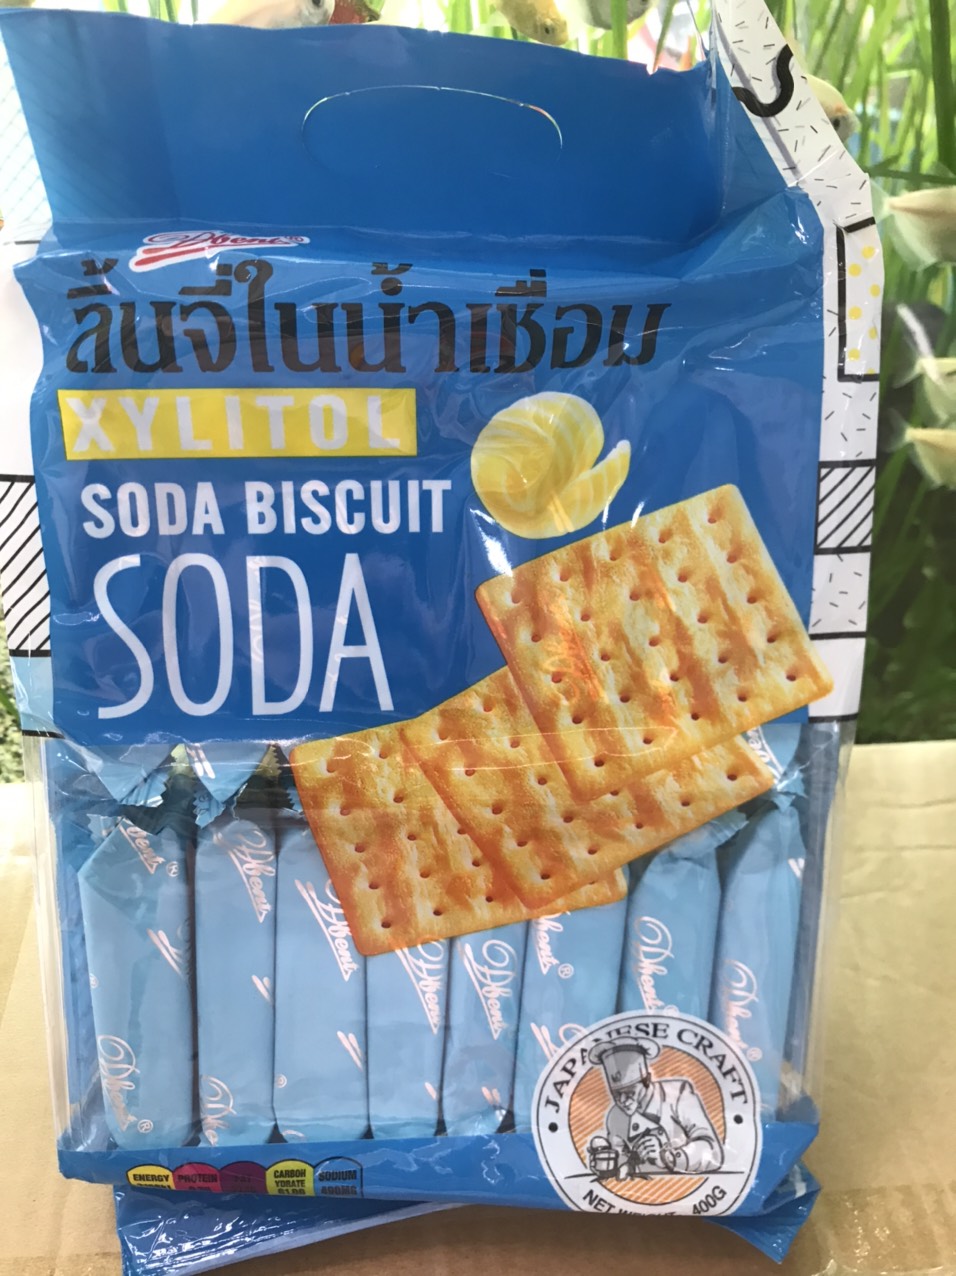 Bánh Quy Ăn Kiêng Dbent Soda Biscuit Vị Xylitol Gói 400g - xanh